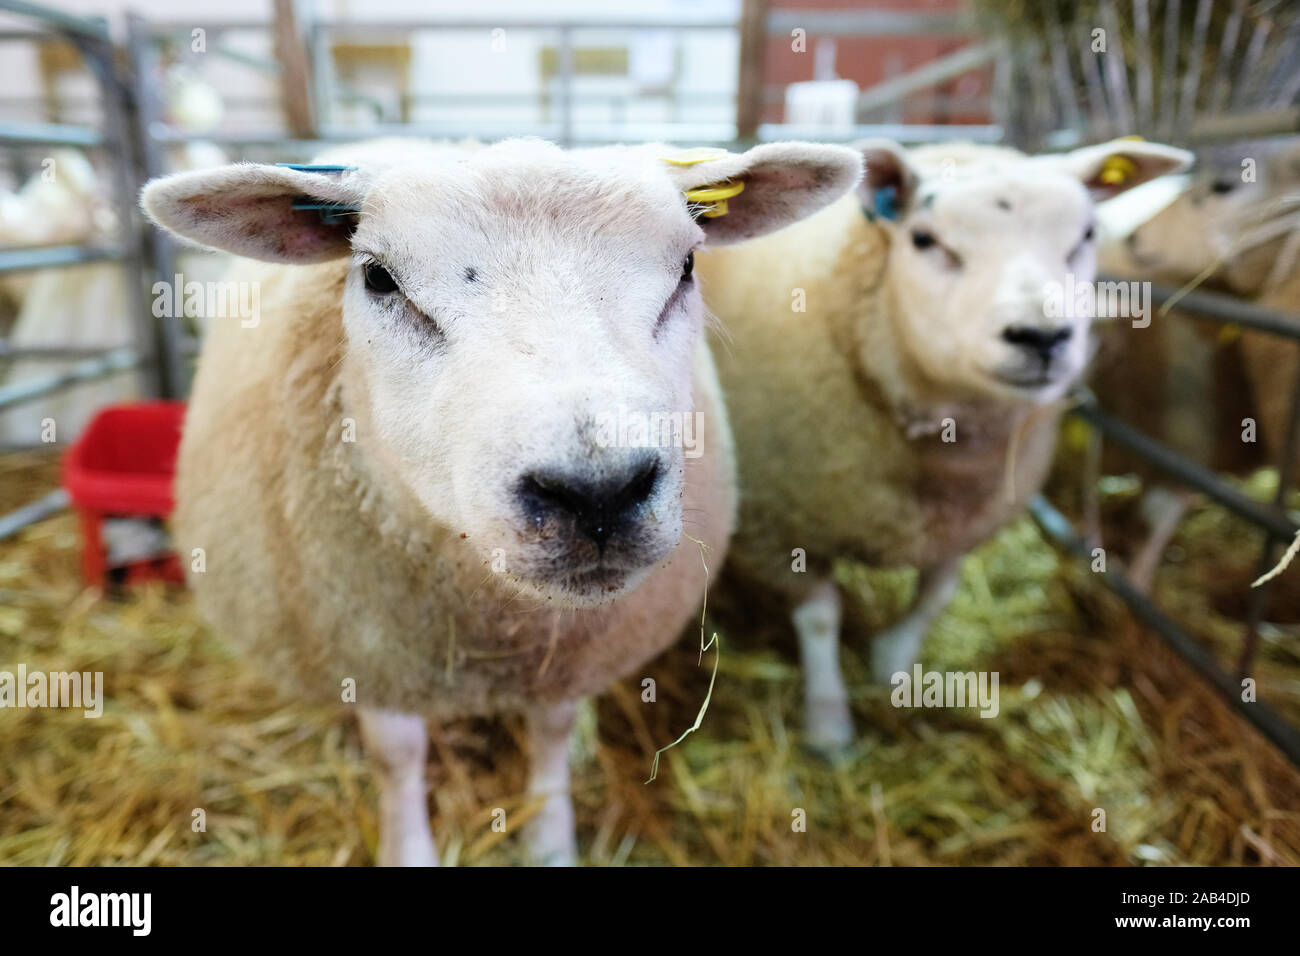 Royal Welsh Showground, Builth Wells, Powy, Pays de Galles, Royaume-Uni - Lundi 25 novembre 2019 - Royal Welsh Winter Fair - Loegel Jet moutons attendent leur tour dans l'enclos avant de l'exposition. Crédit : Steven Mai/Alamy Live News Banque D'Images